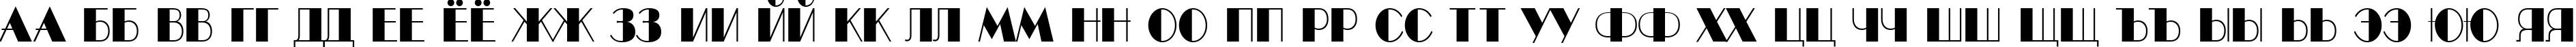 Пример написания русского алфавита шрифтом a_BentTitulNr